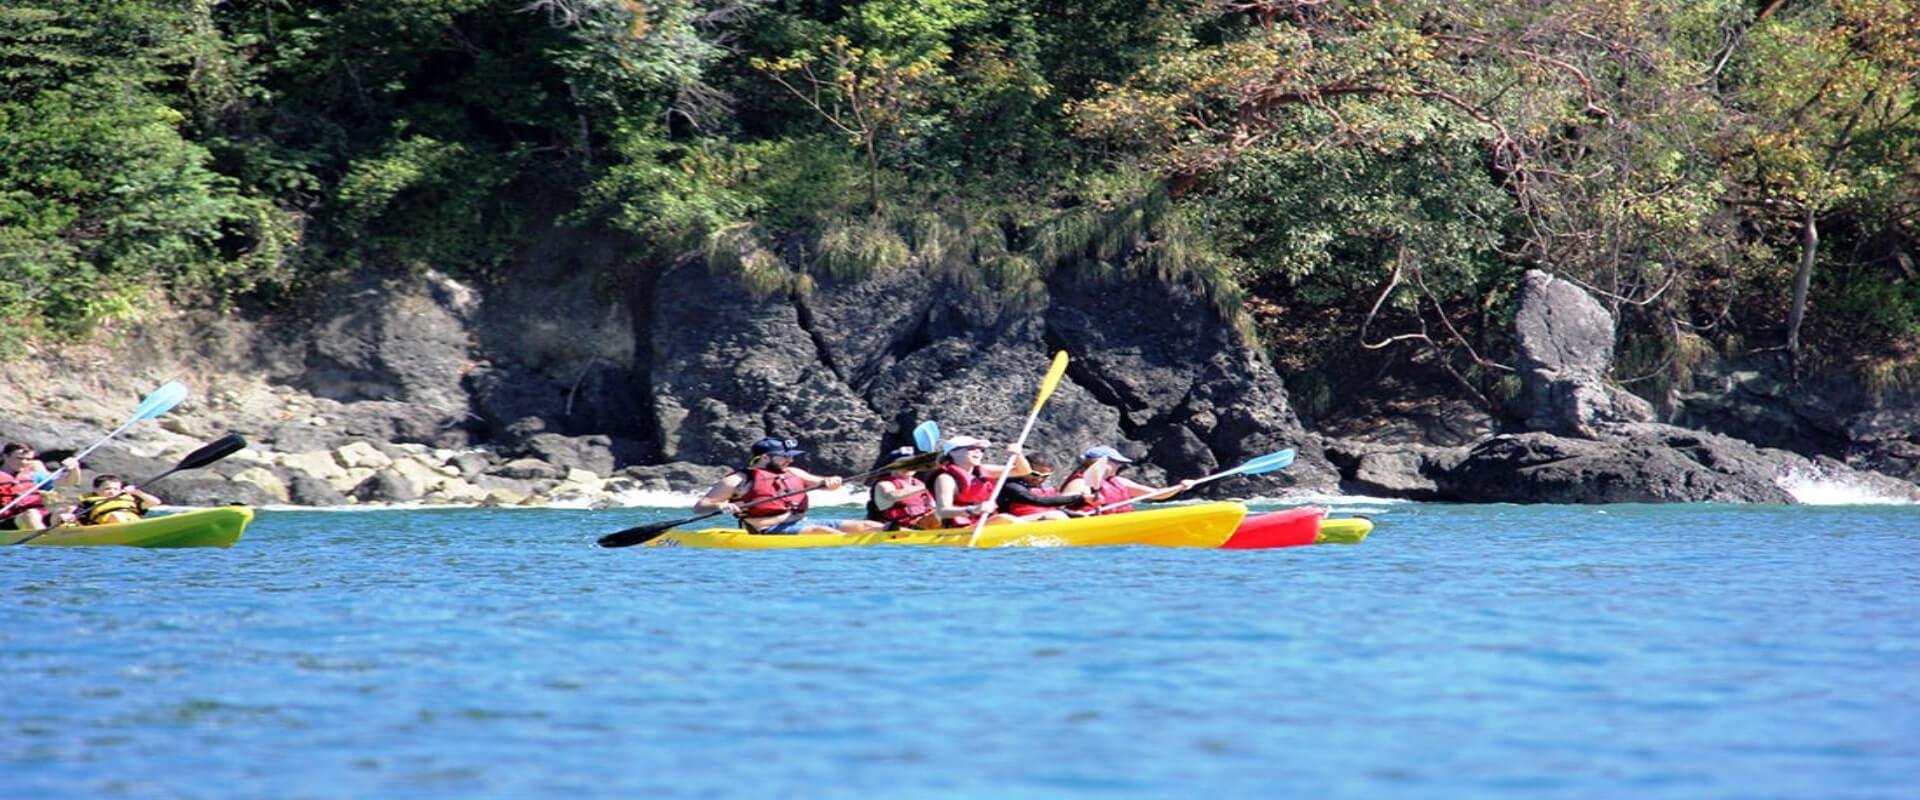 Kayak and Snorkeling Tour | Costa Rica Jade Tours